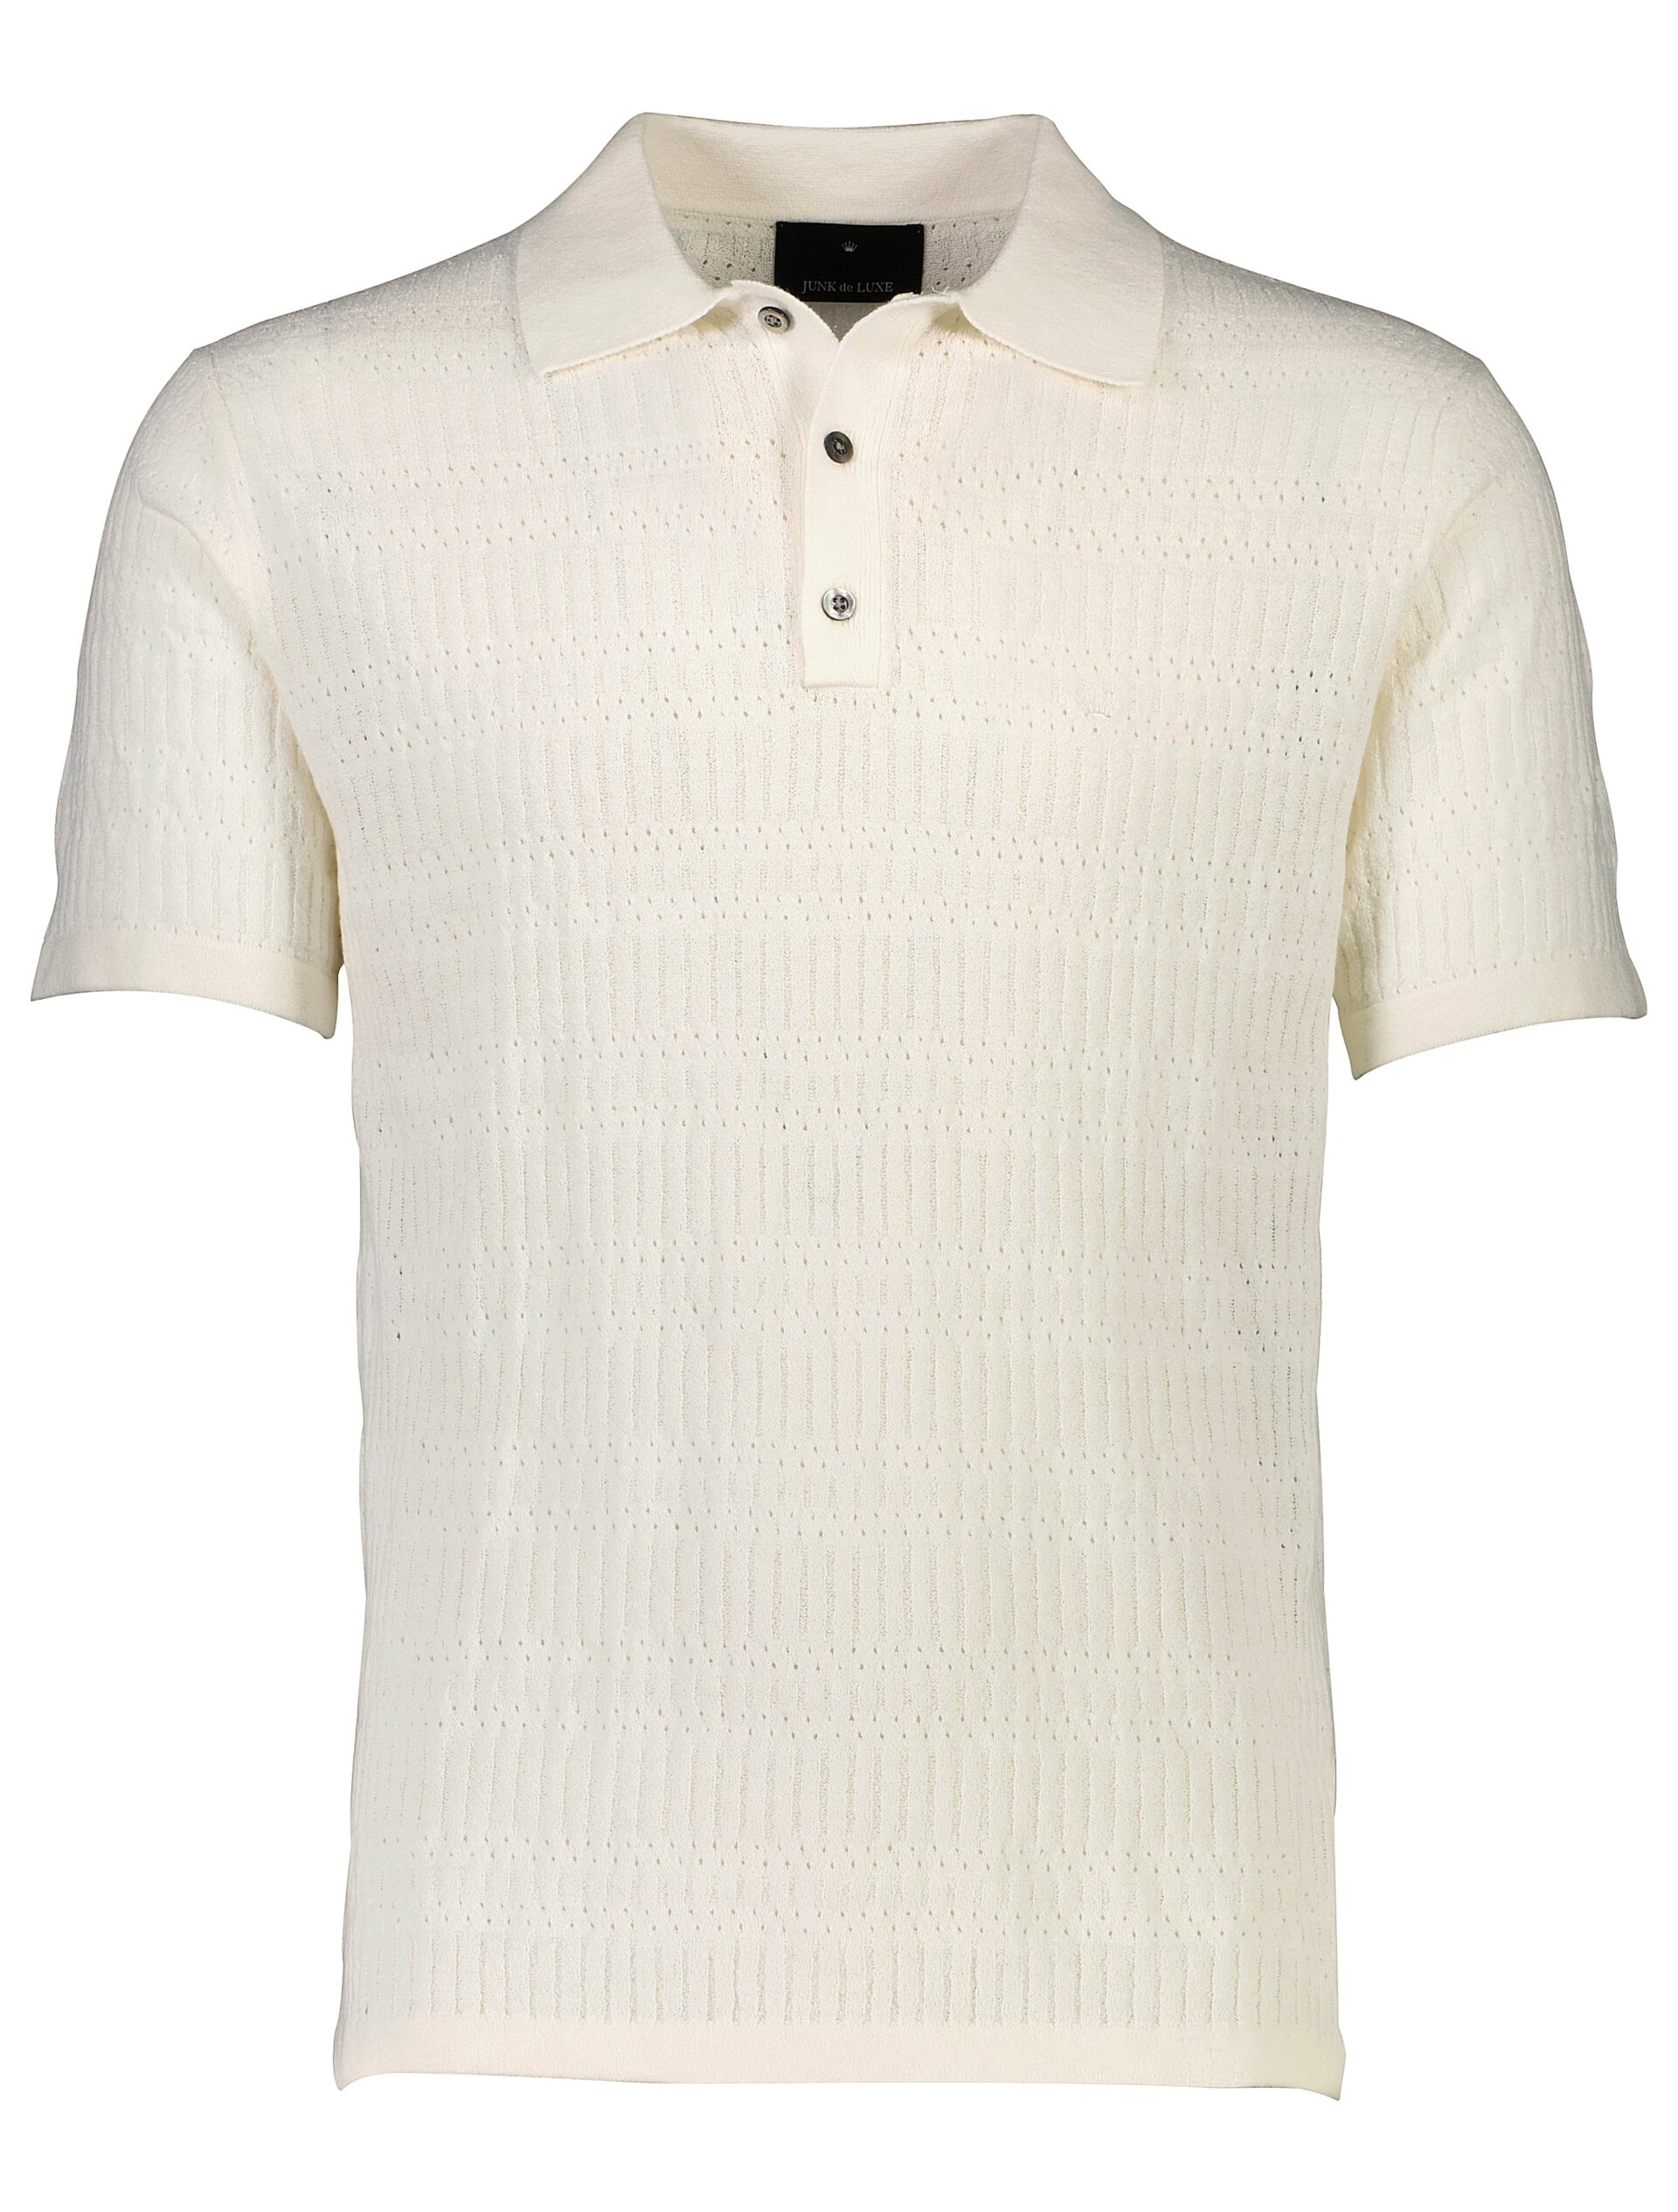 Junk de Luxe Polo shirt white / off white